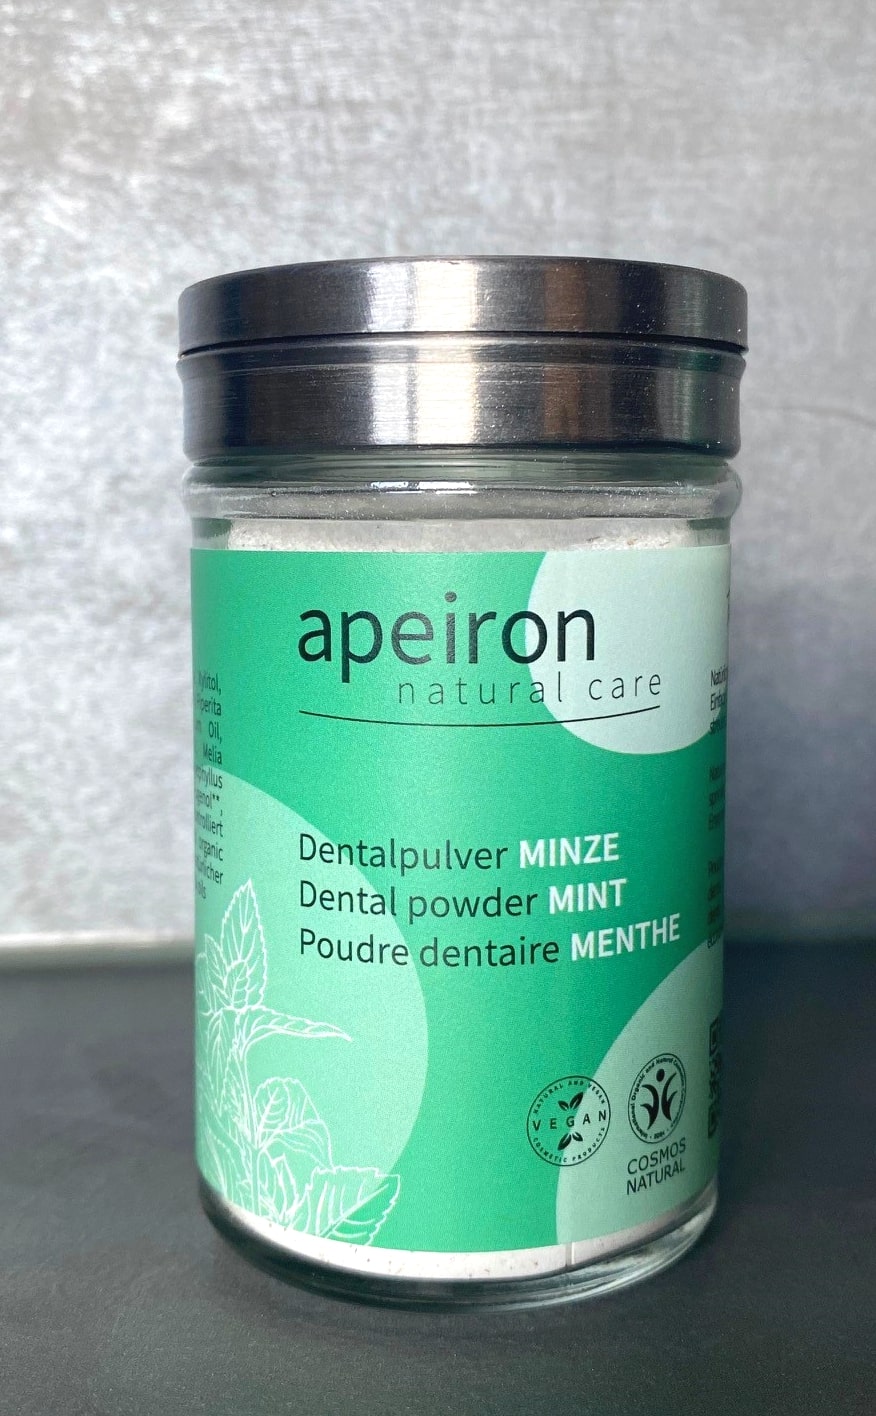 Dentalpulver Minze, Apeiron